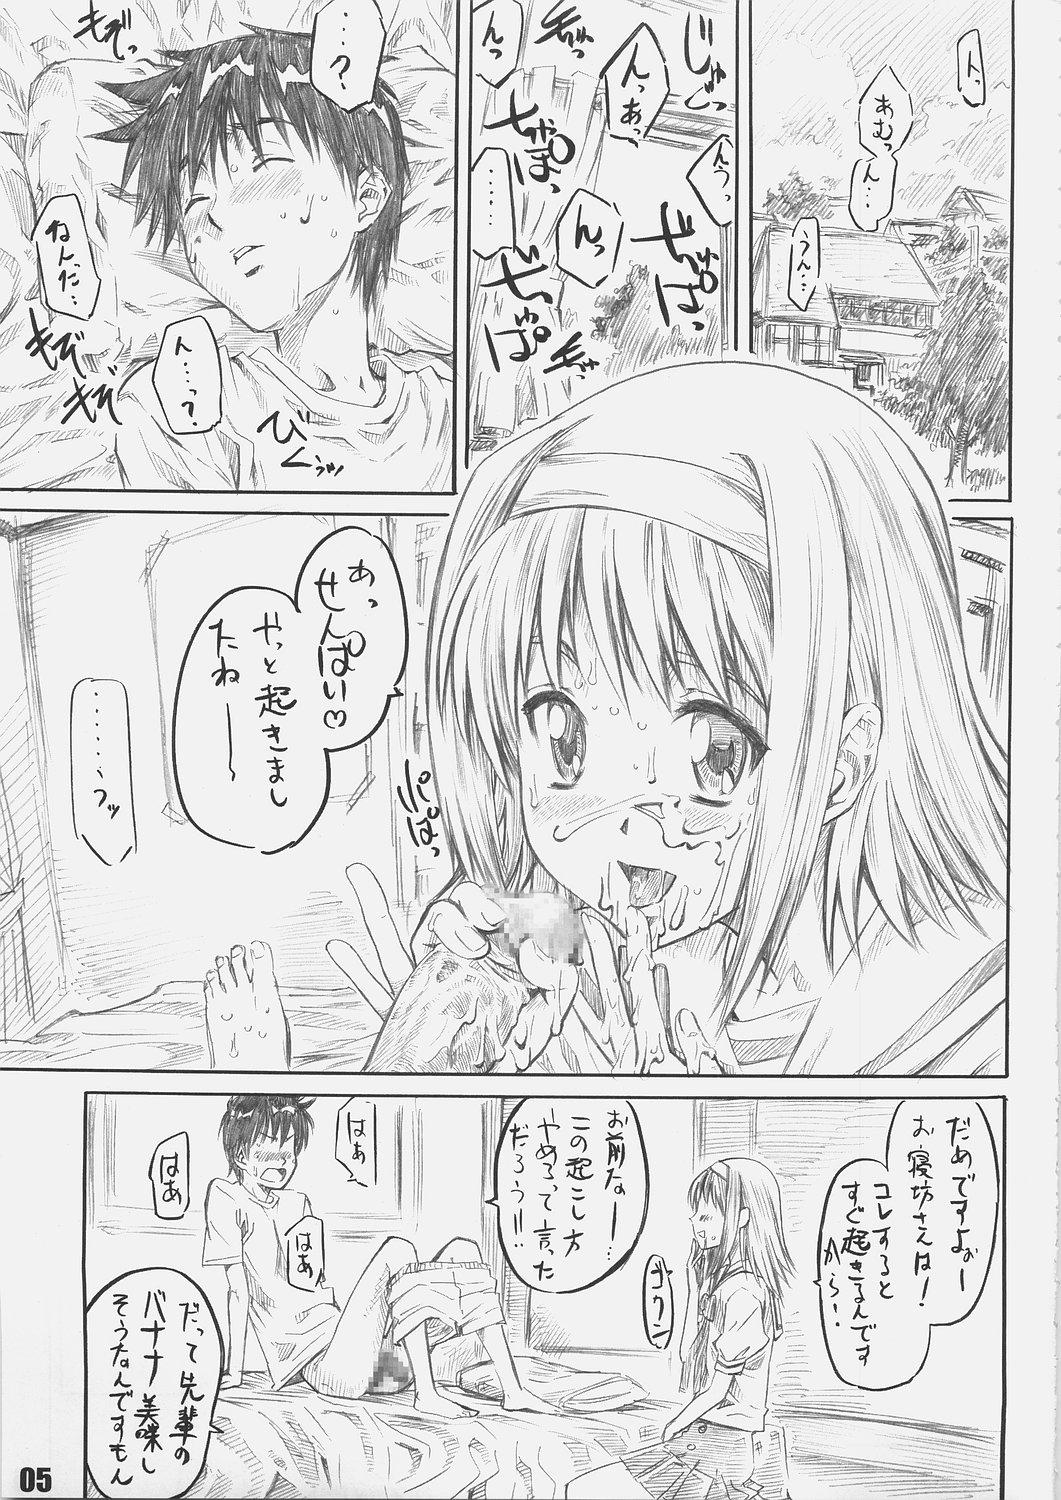 Sextoy Sakurairo no Kiretsu - Da capo Animation - Page 4